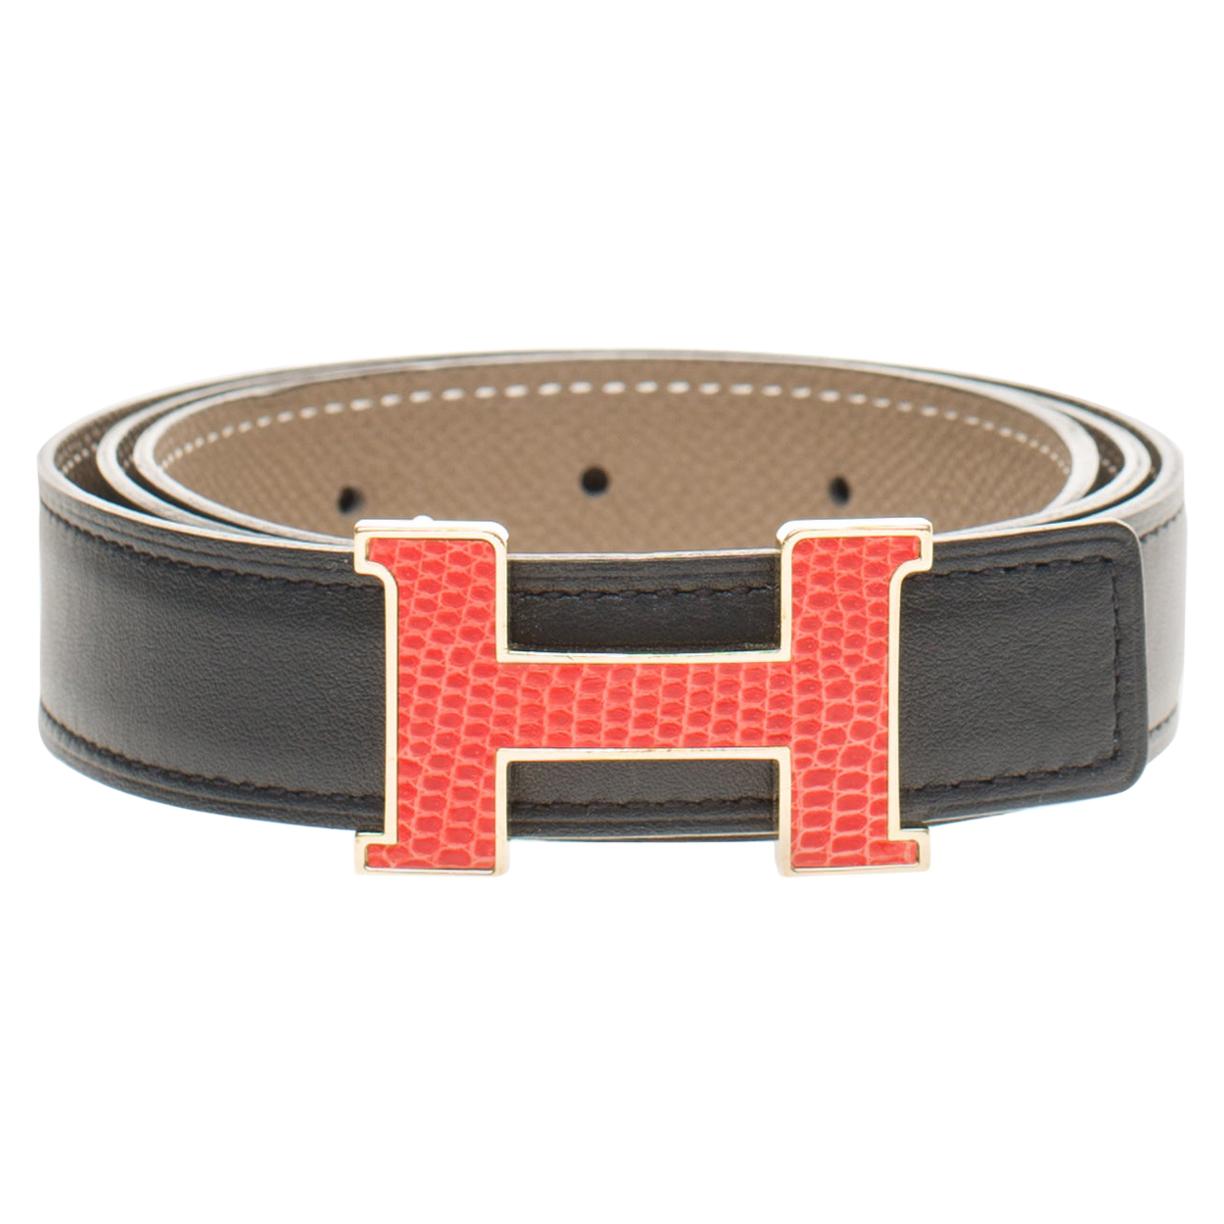 hermes belt buckle for sale